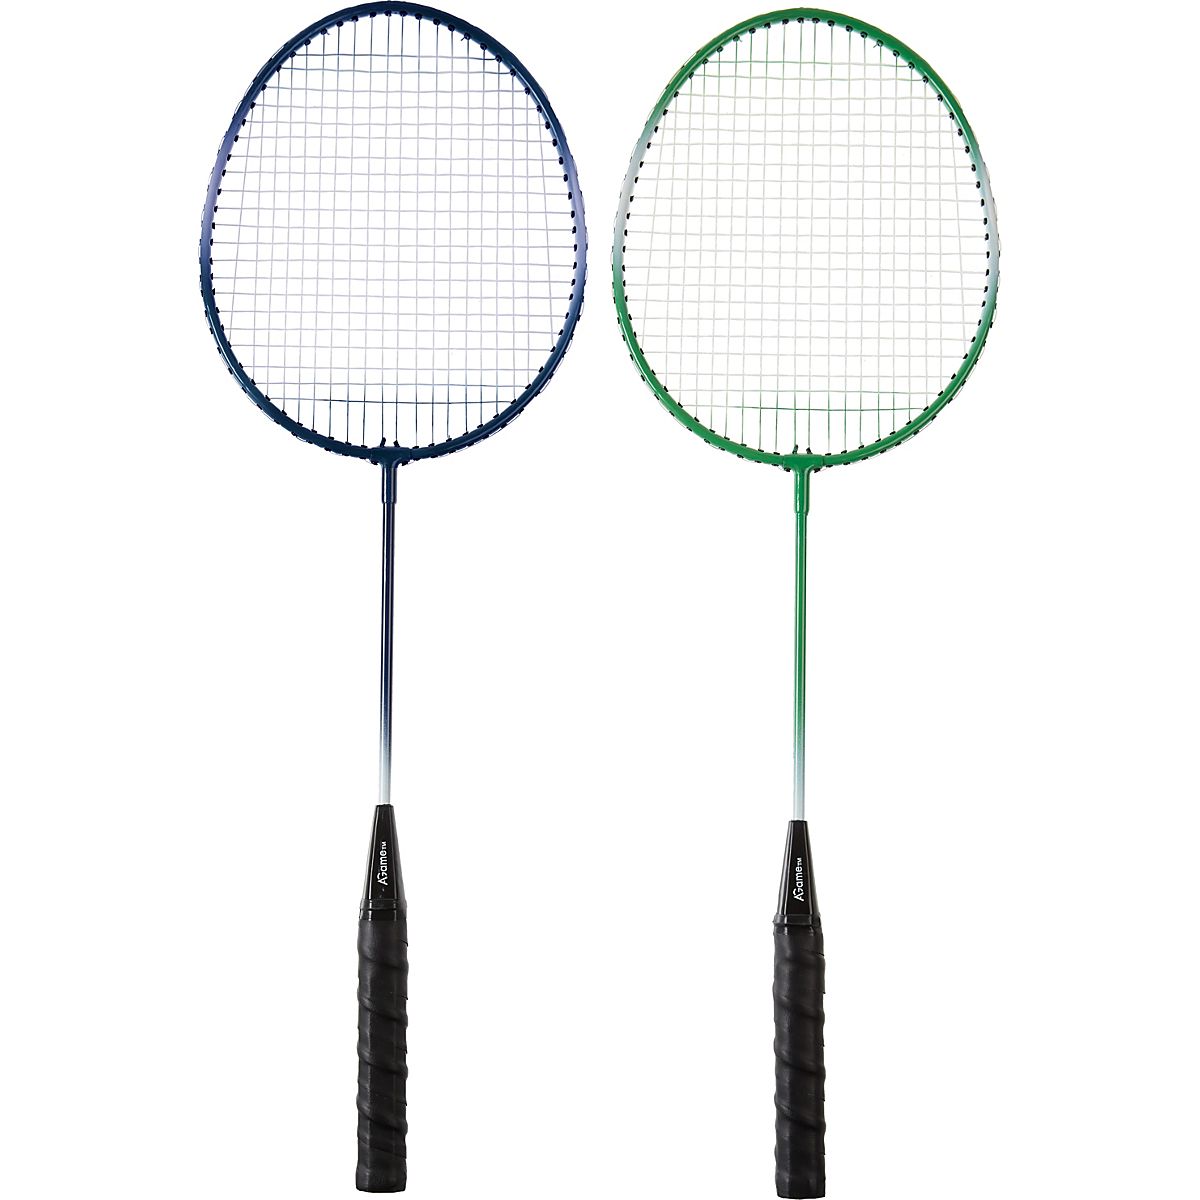 Ruwe slaap Belastingen Polijsten AGame 2-Player Badminton Racquet Set | Academy